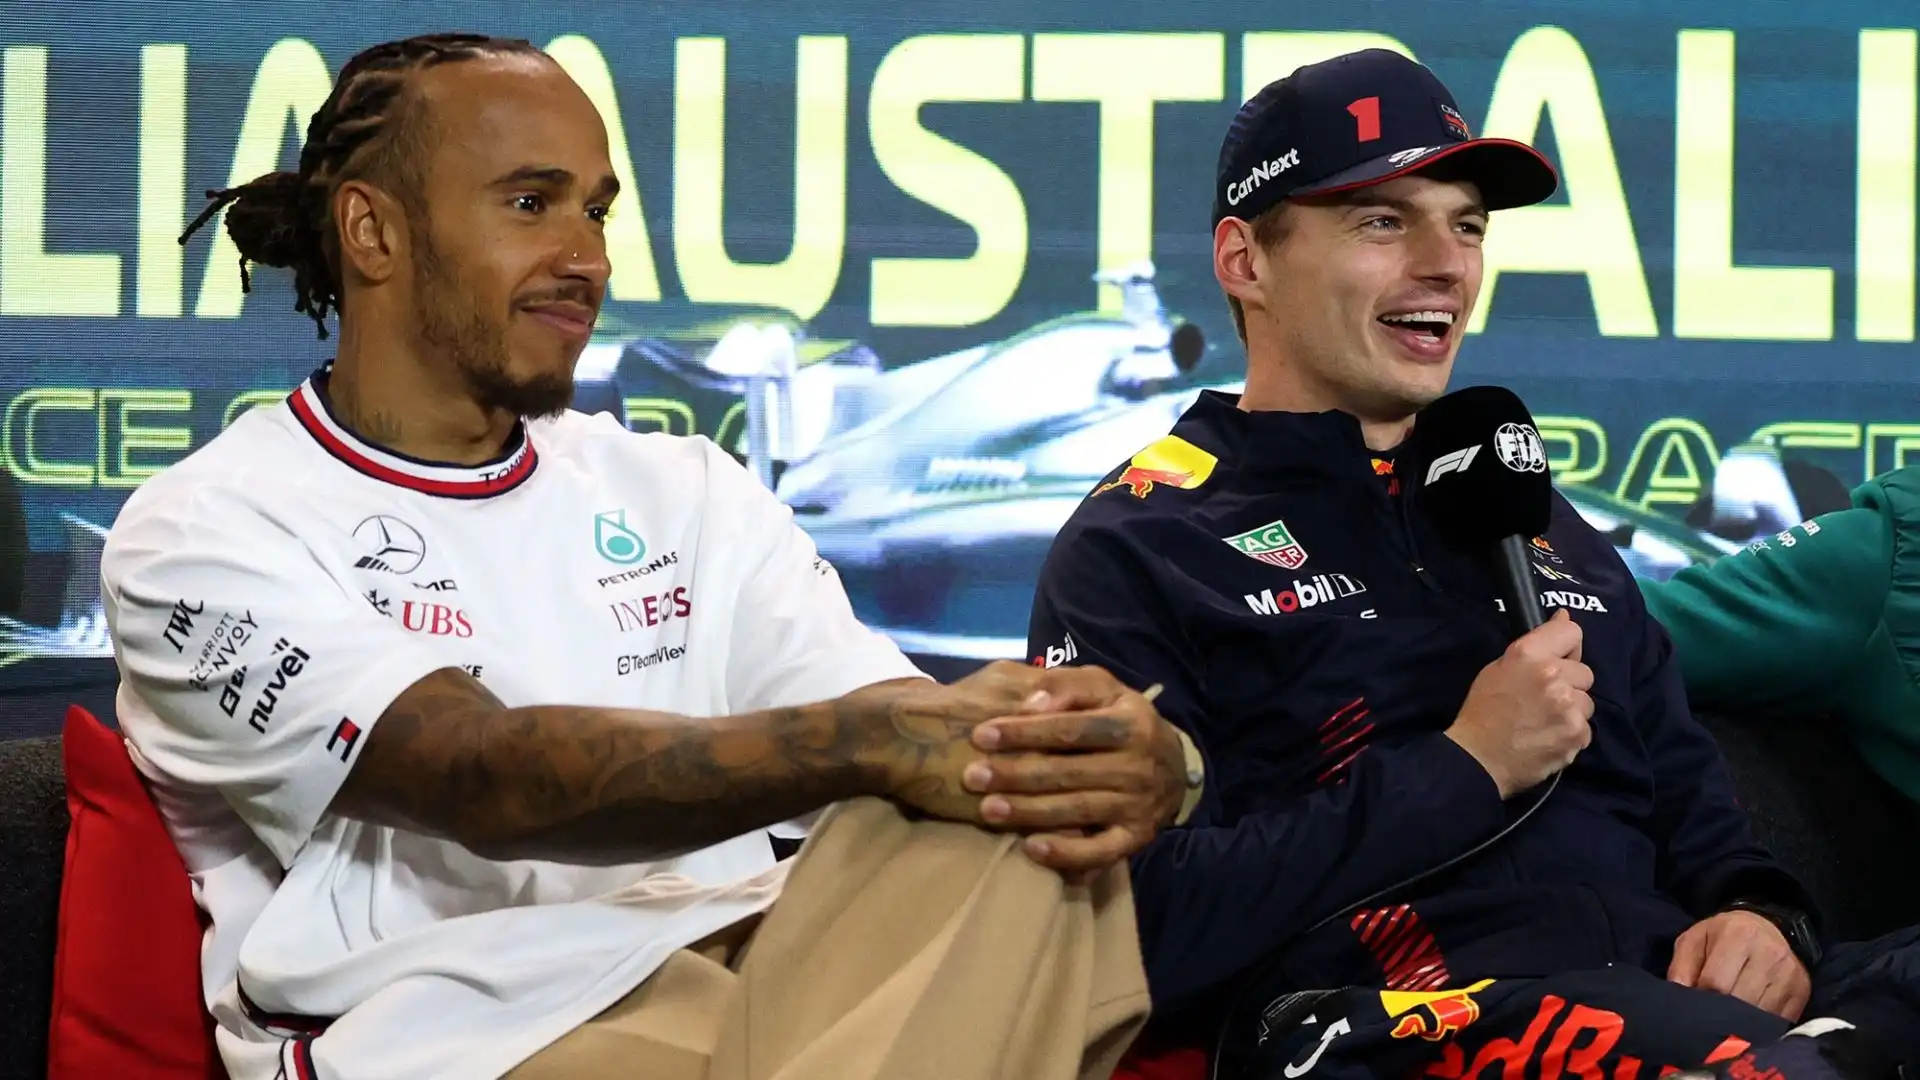 Verstappen preferisce dominare le gare e i mondiali: "Adoro farlo"